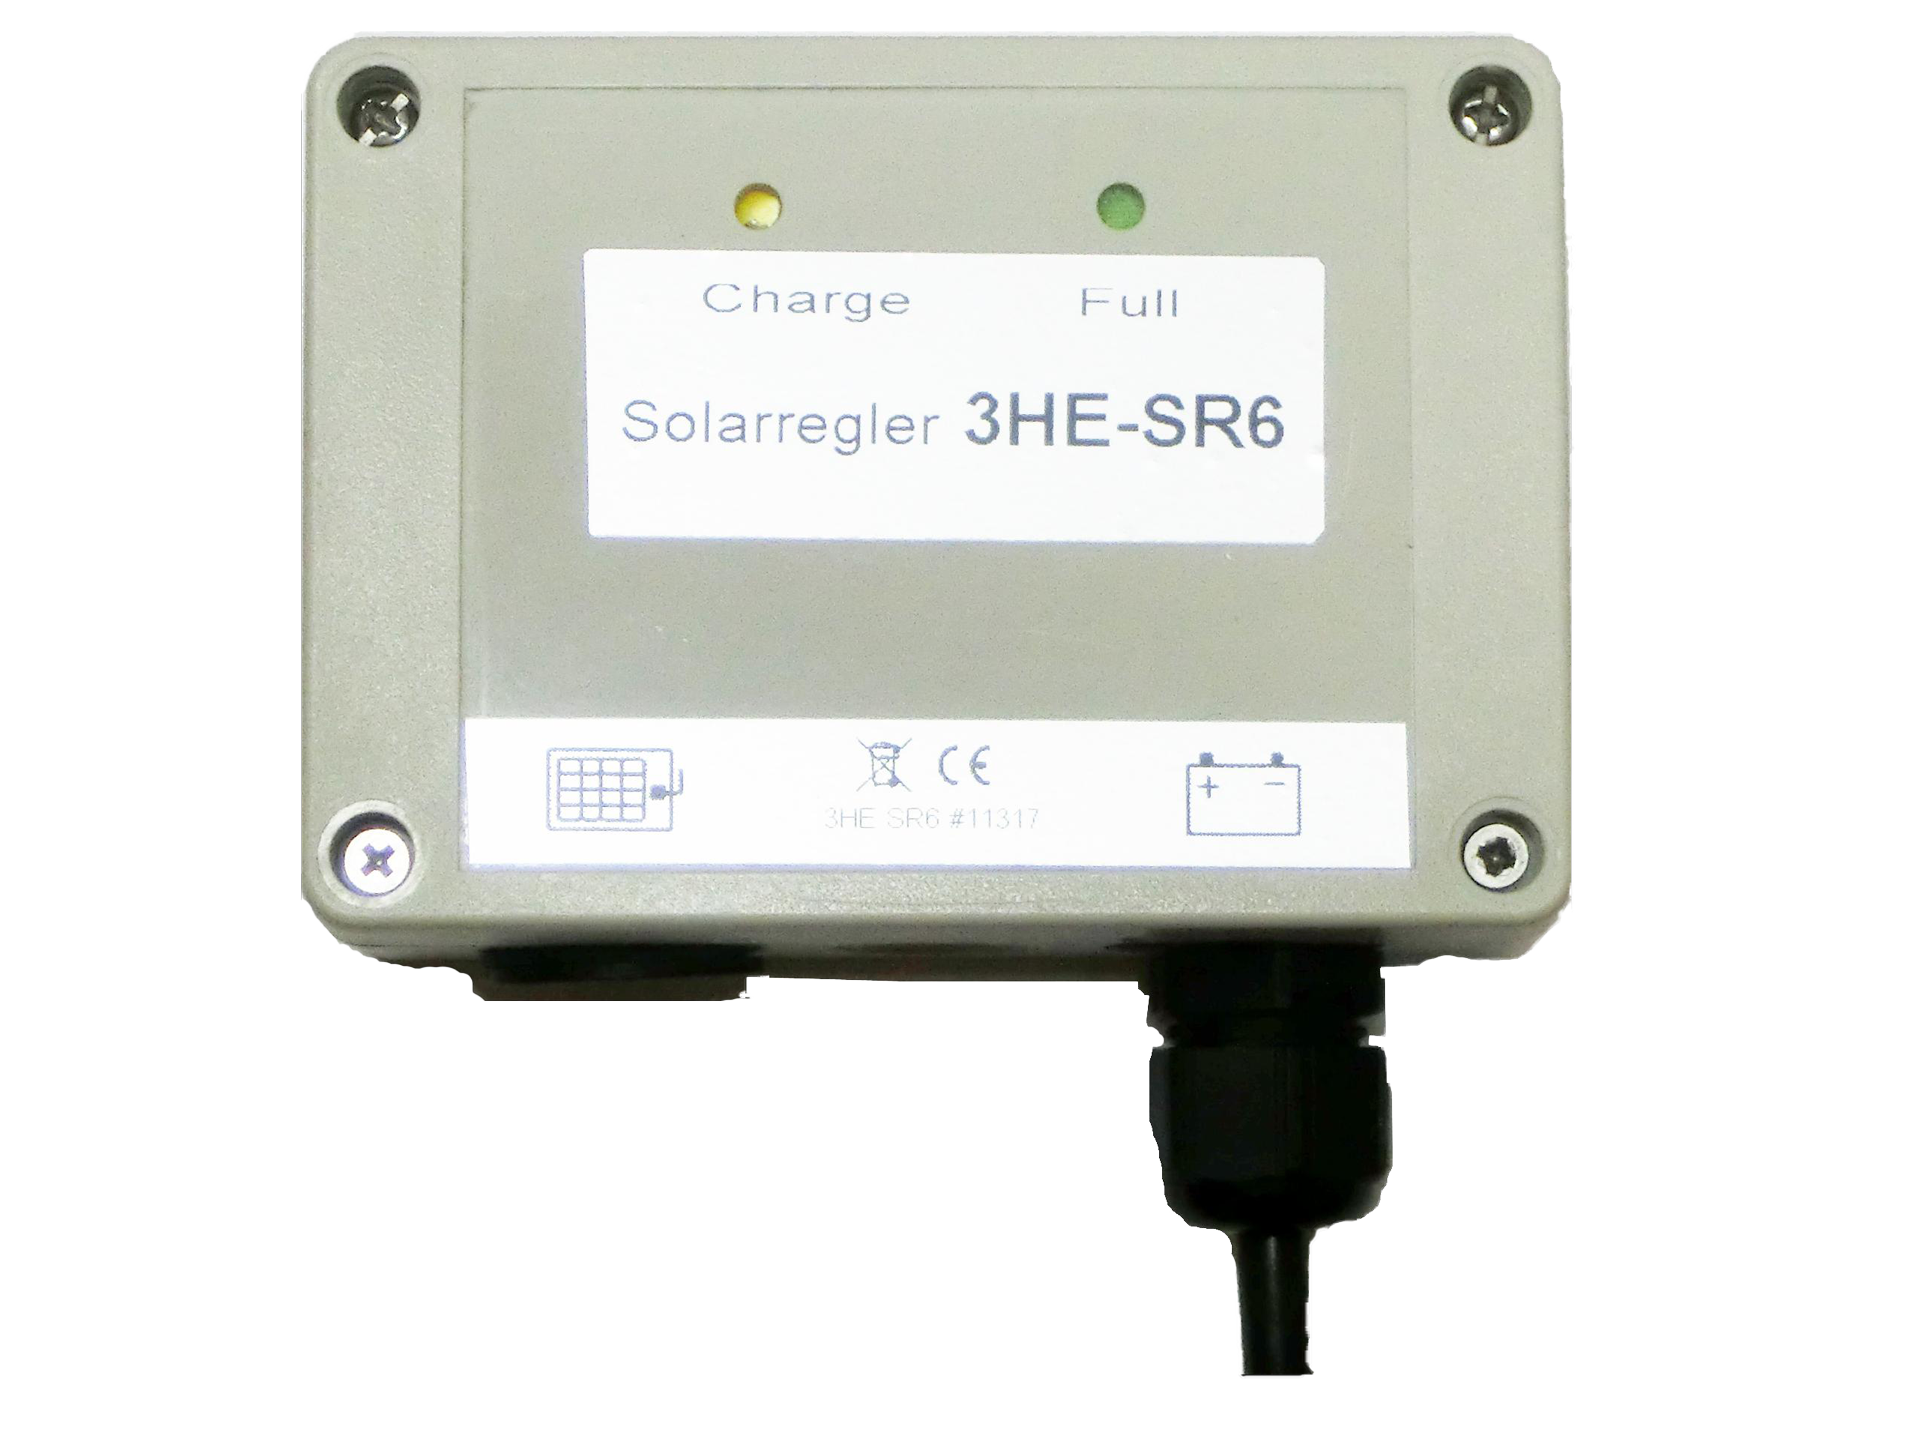 Solar regulator extern, SR6 for 3-HE battery